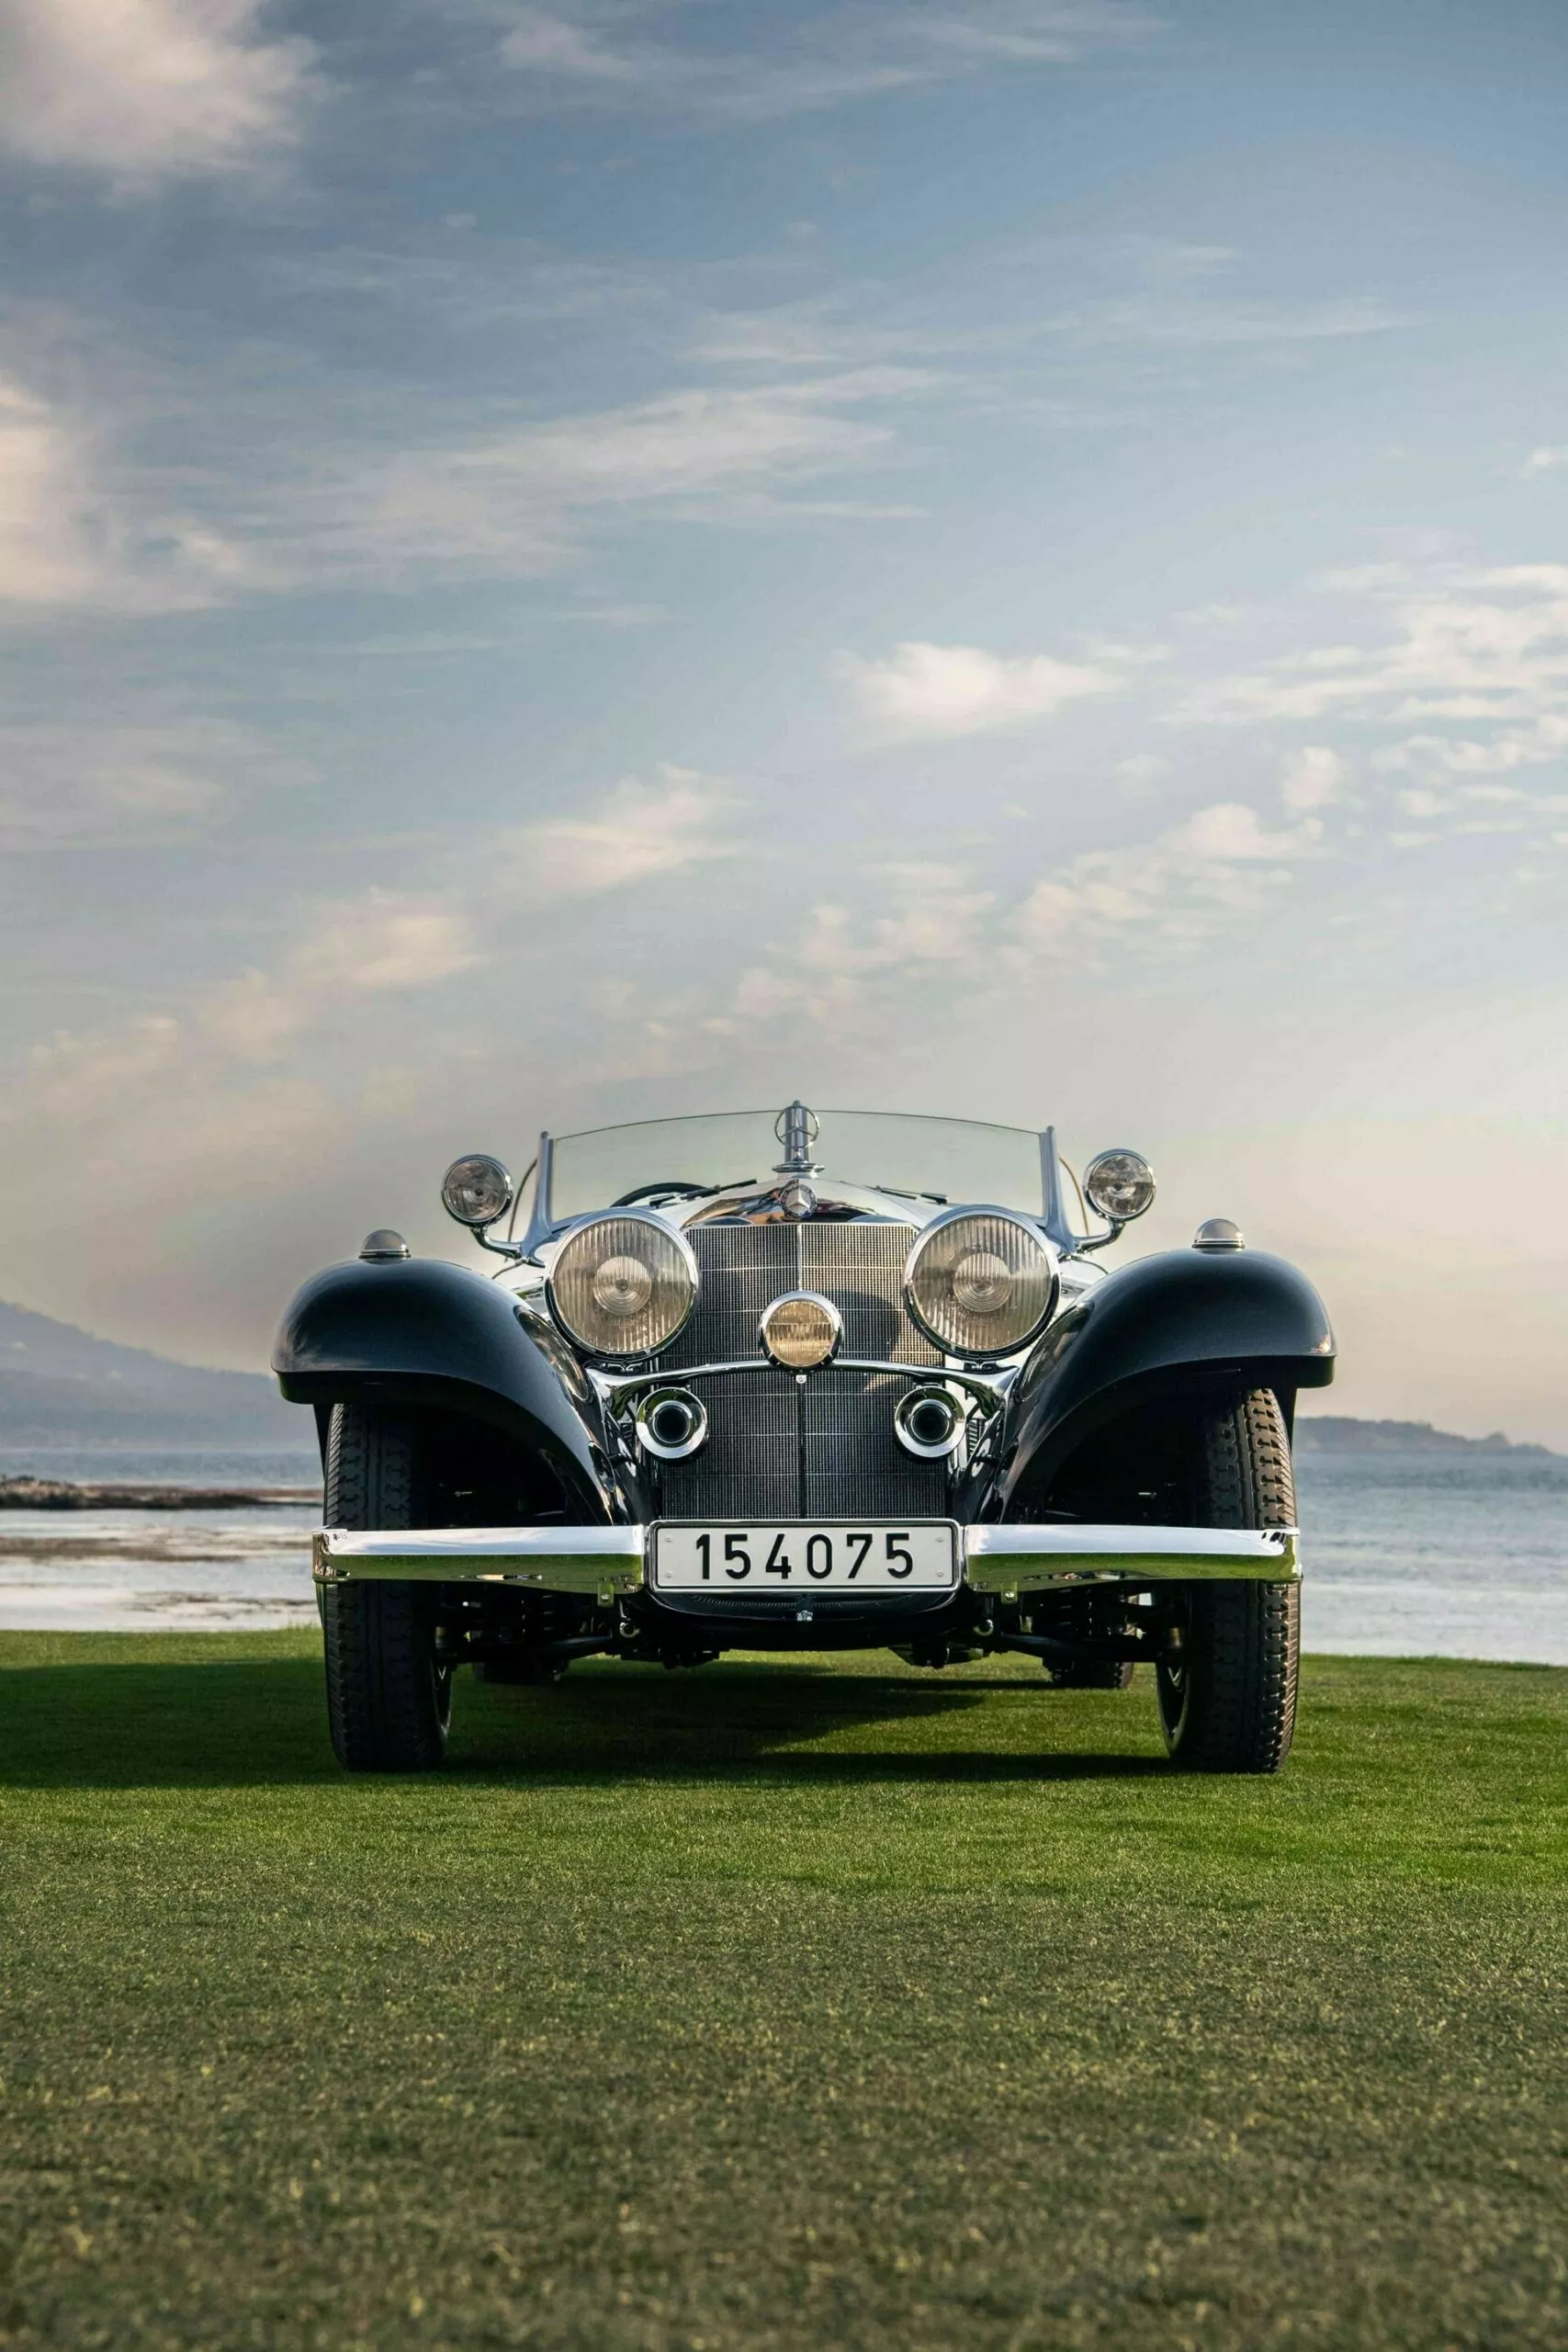 سيارة مرسيدس K 540 سبيشال التي صُنعت لملك أفغانستان في عام 1937 تفوز بجائزة أفضل سيارة في مهرجان بيبل بيتش 6